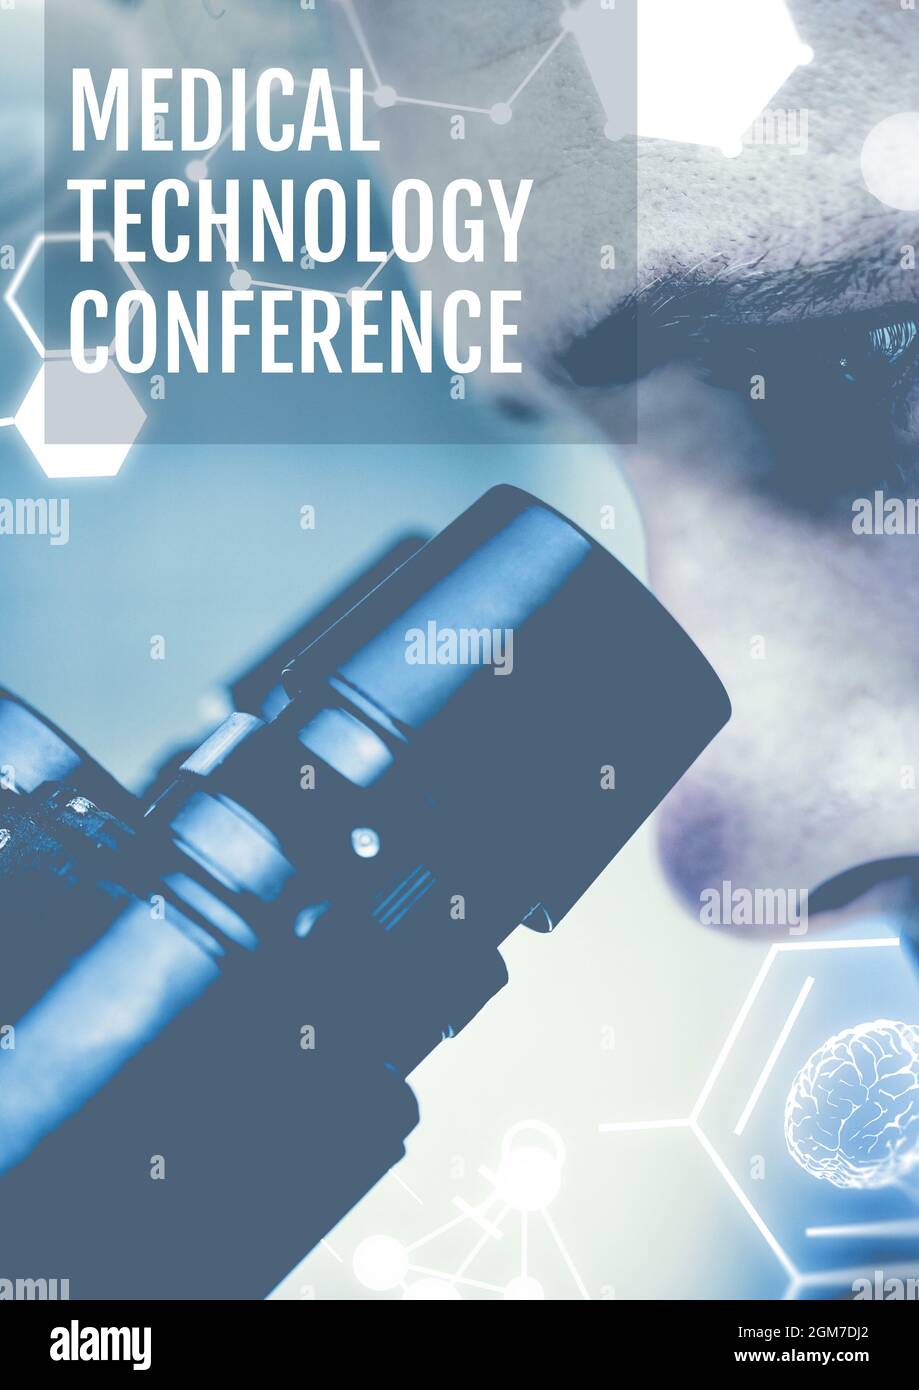 Konferenztext für Medizintechnik gegen die Nahaufnahme eines männlichen Gesundheitshelfer mit Mikroskop Stockfoto